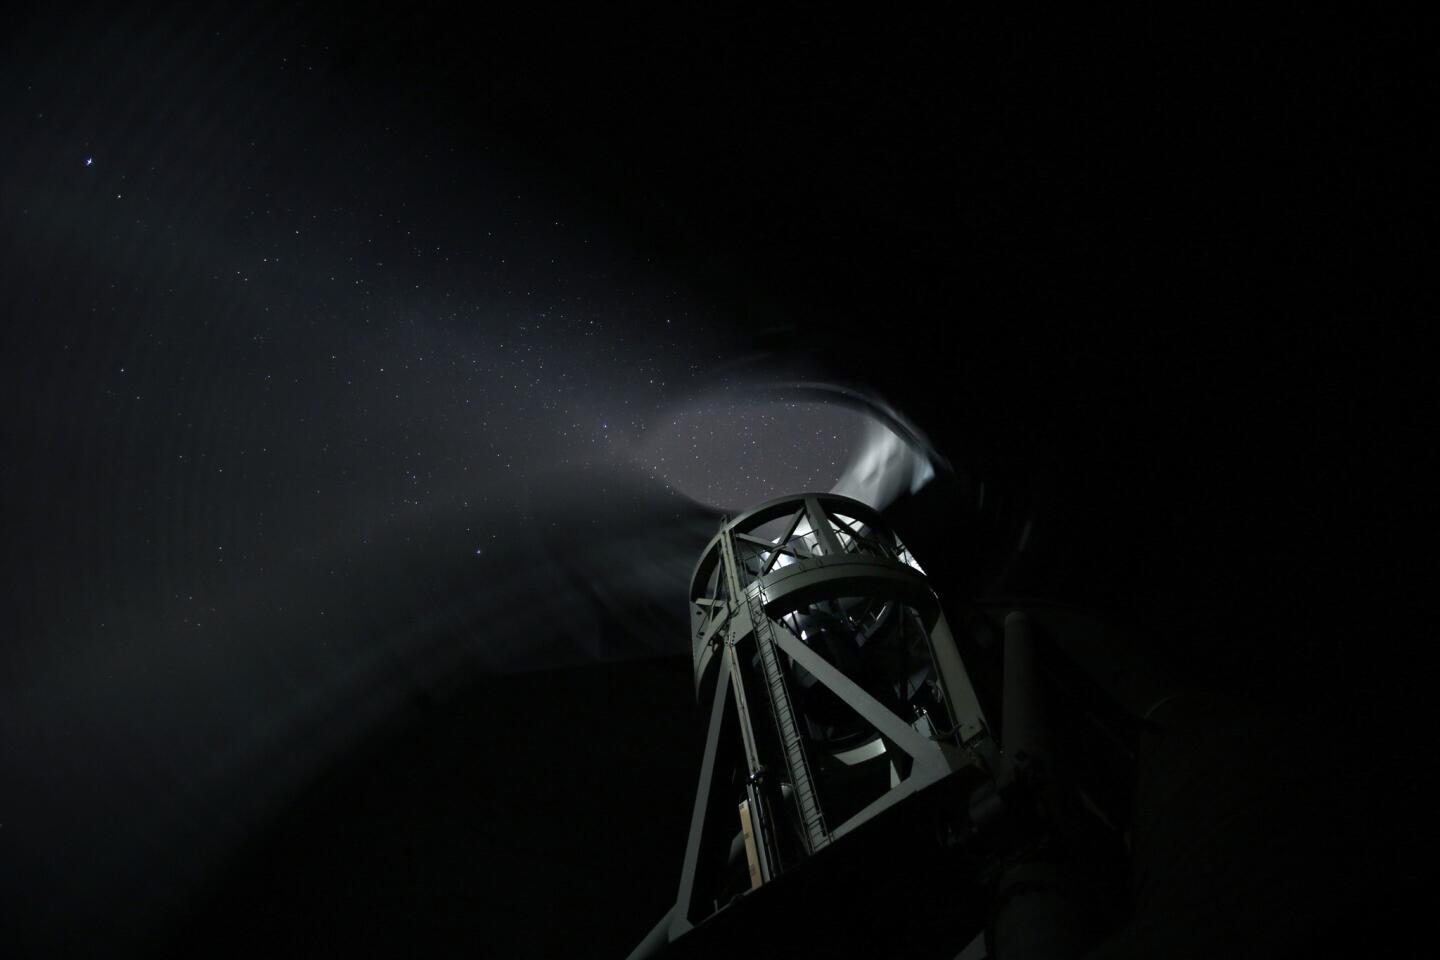 Hale Telescope